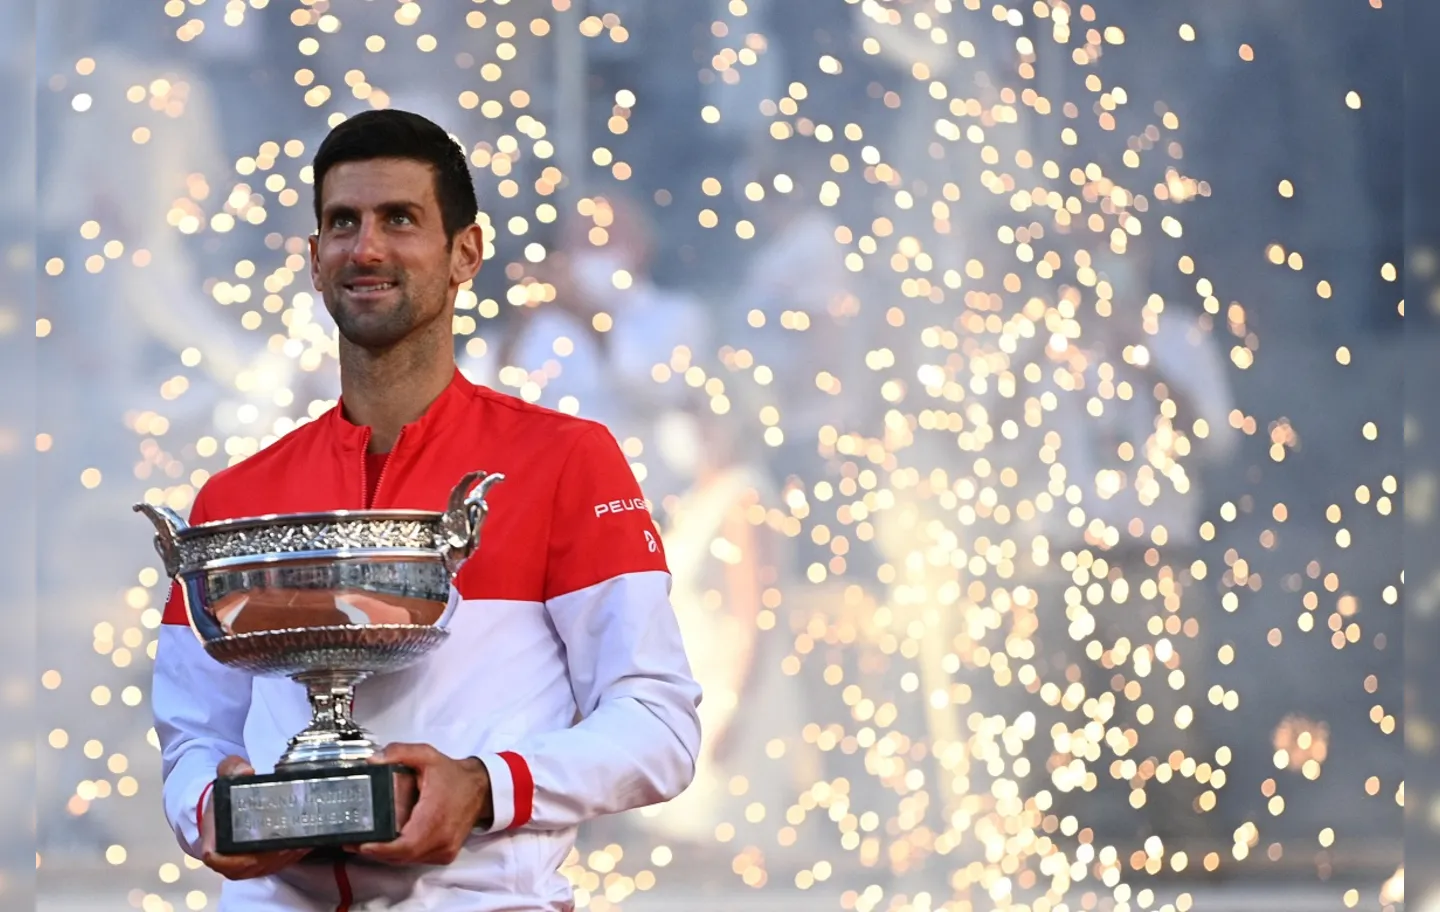 Sérvio chega a 19 títulos em torneios de Grand Slam | Foto: Anne-Christine Poujoulat | AFP